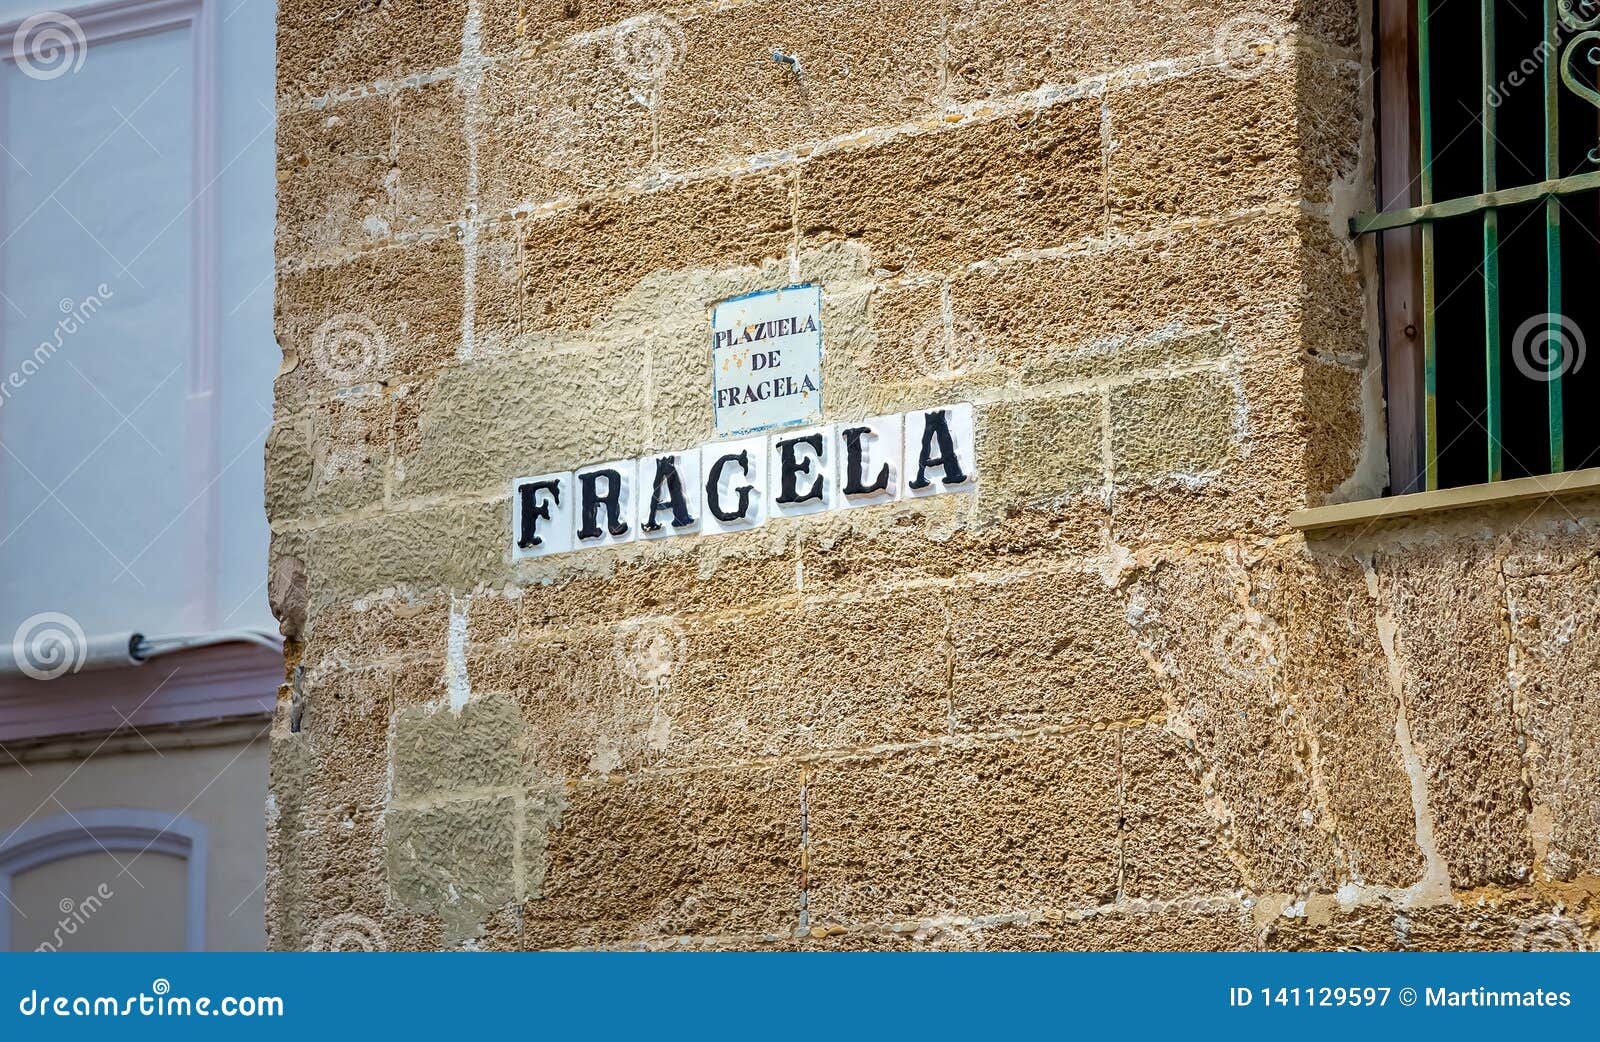 fragela street in cÃ¡diz